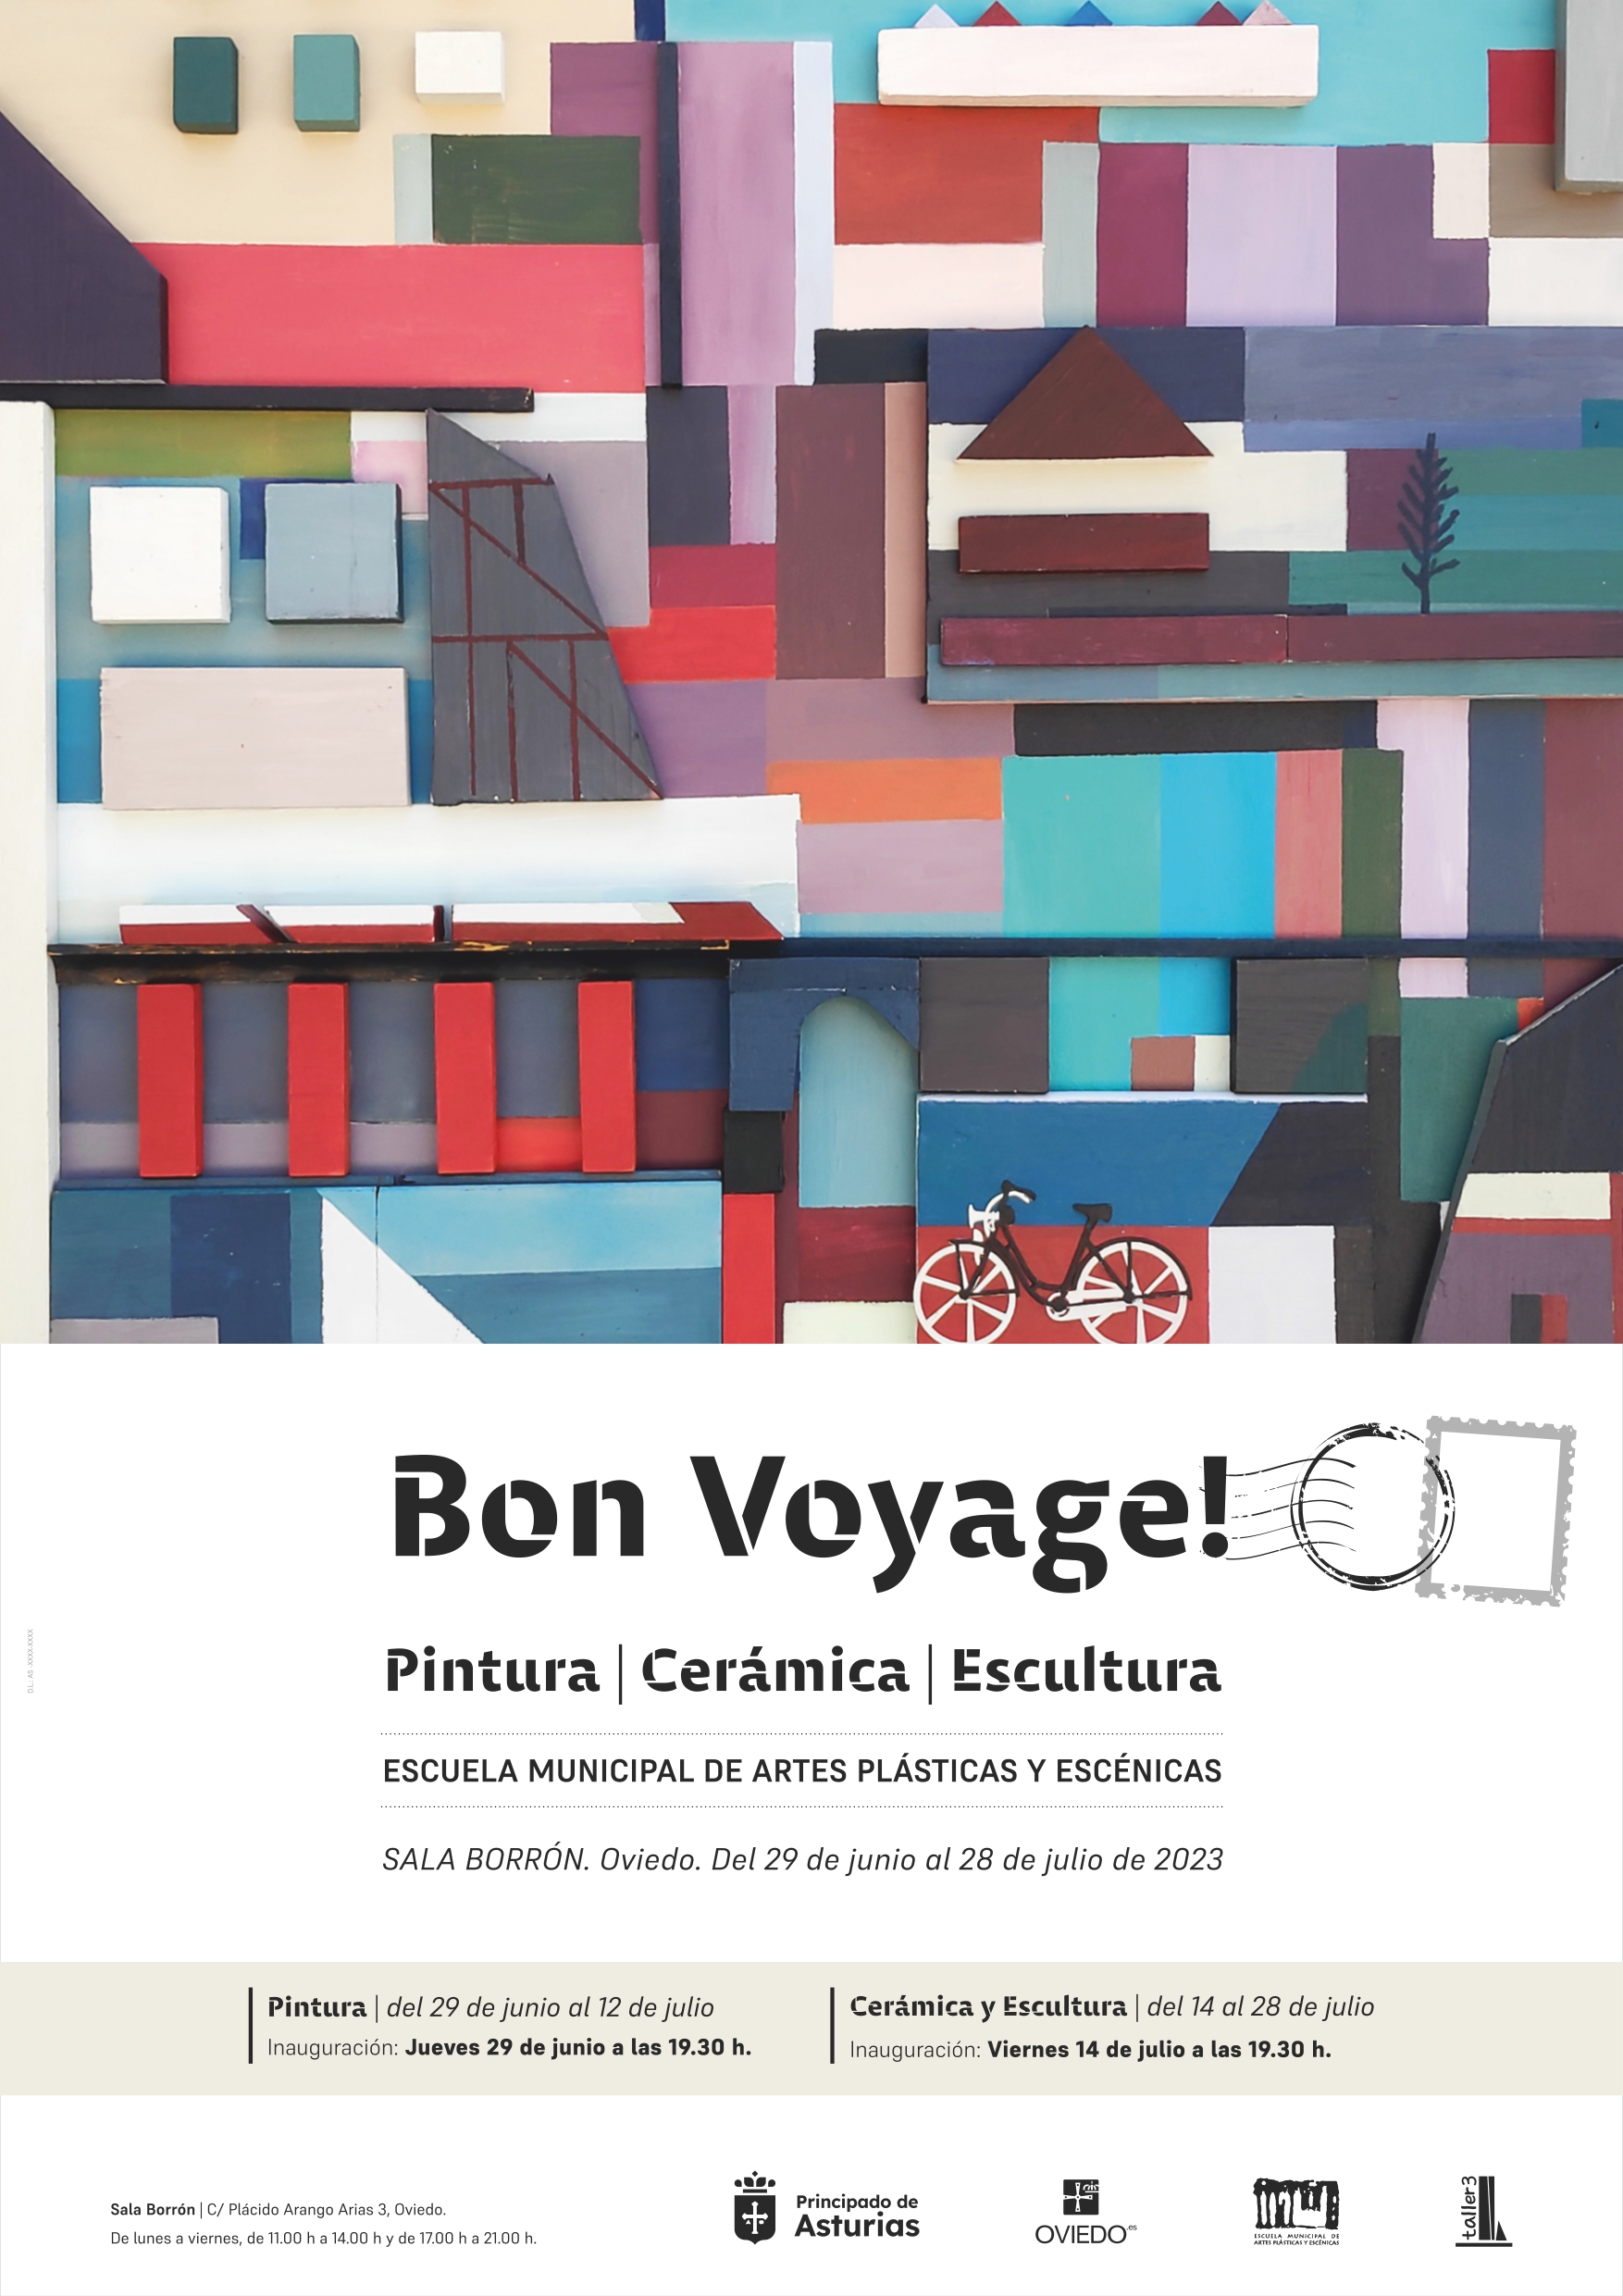 Imagen - La Sala Borrón acoge la exposición Bon Voyage! de la Escuela Municipal de Artes Plásticas y Escénicas de Oviedo